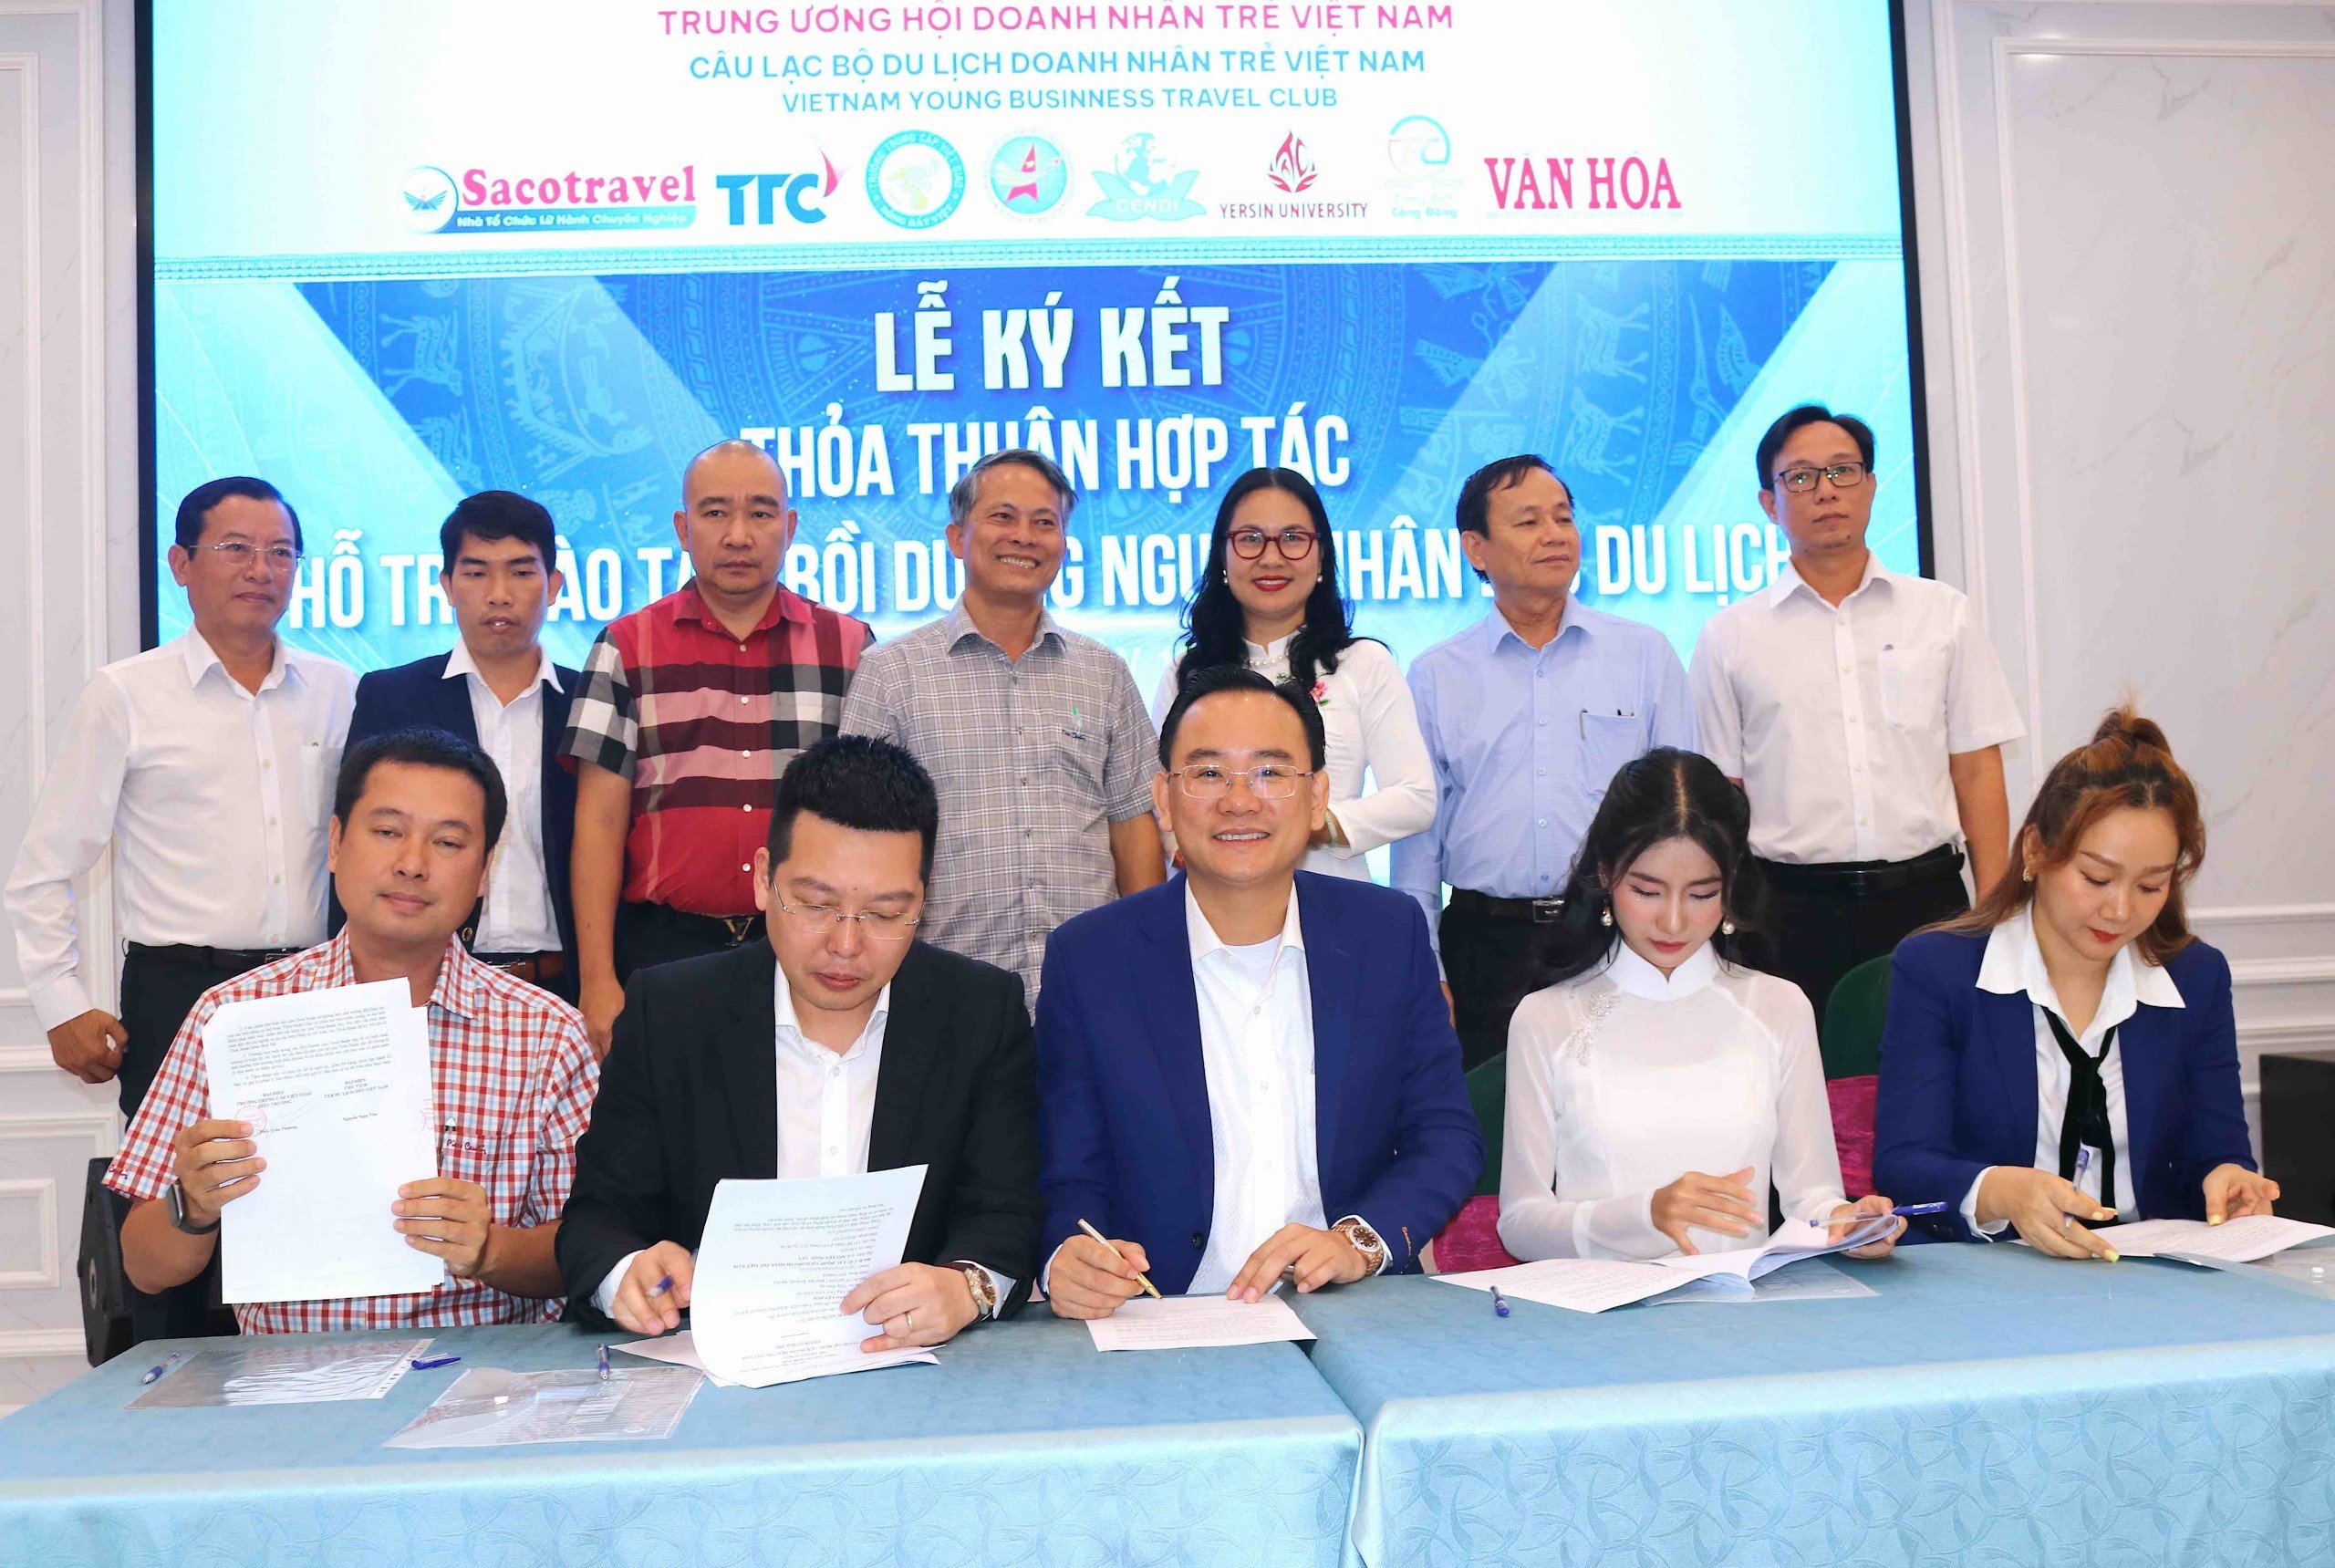 Ký kết các thỏa thuận hợp tác giữa CLB Du lịch Doanh nhân trẻ Việt Nam với các địa phương, các doanh nghiệp, các đơn vị sự nghiệp, đơn vị đào tạo trên toàn quốc